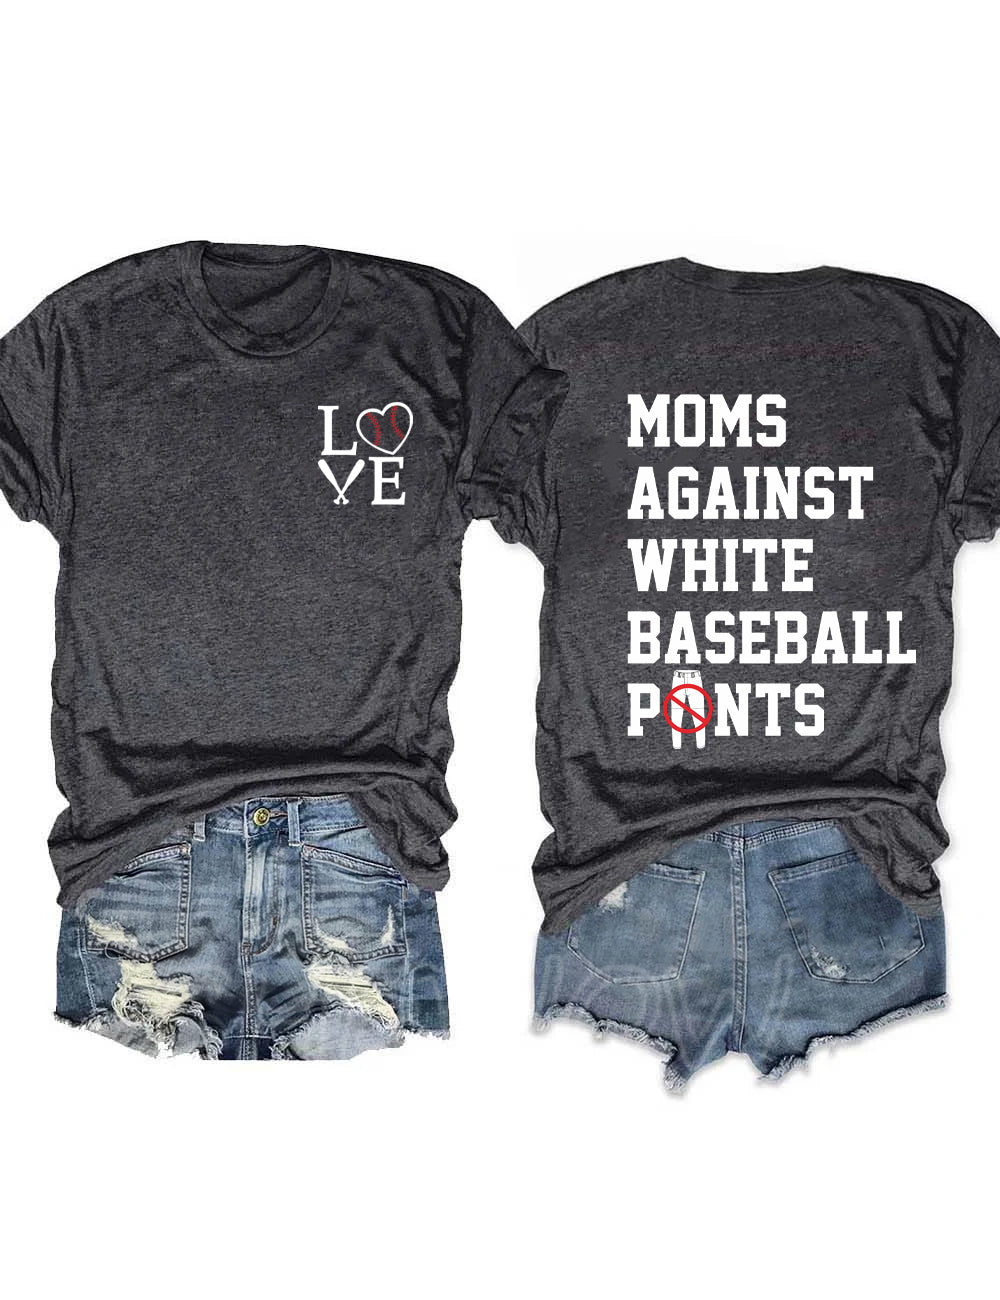 Moms Against White Baseball Pants T-Shirt